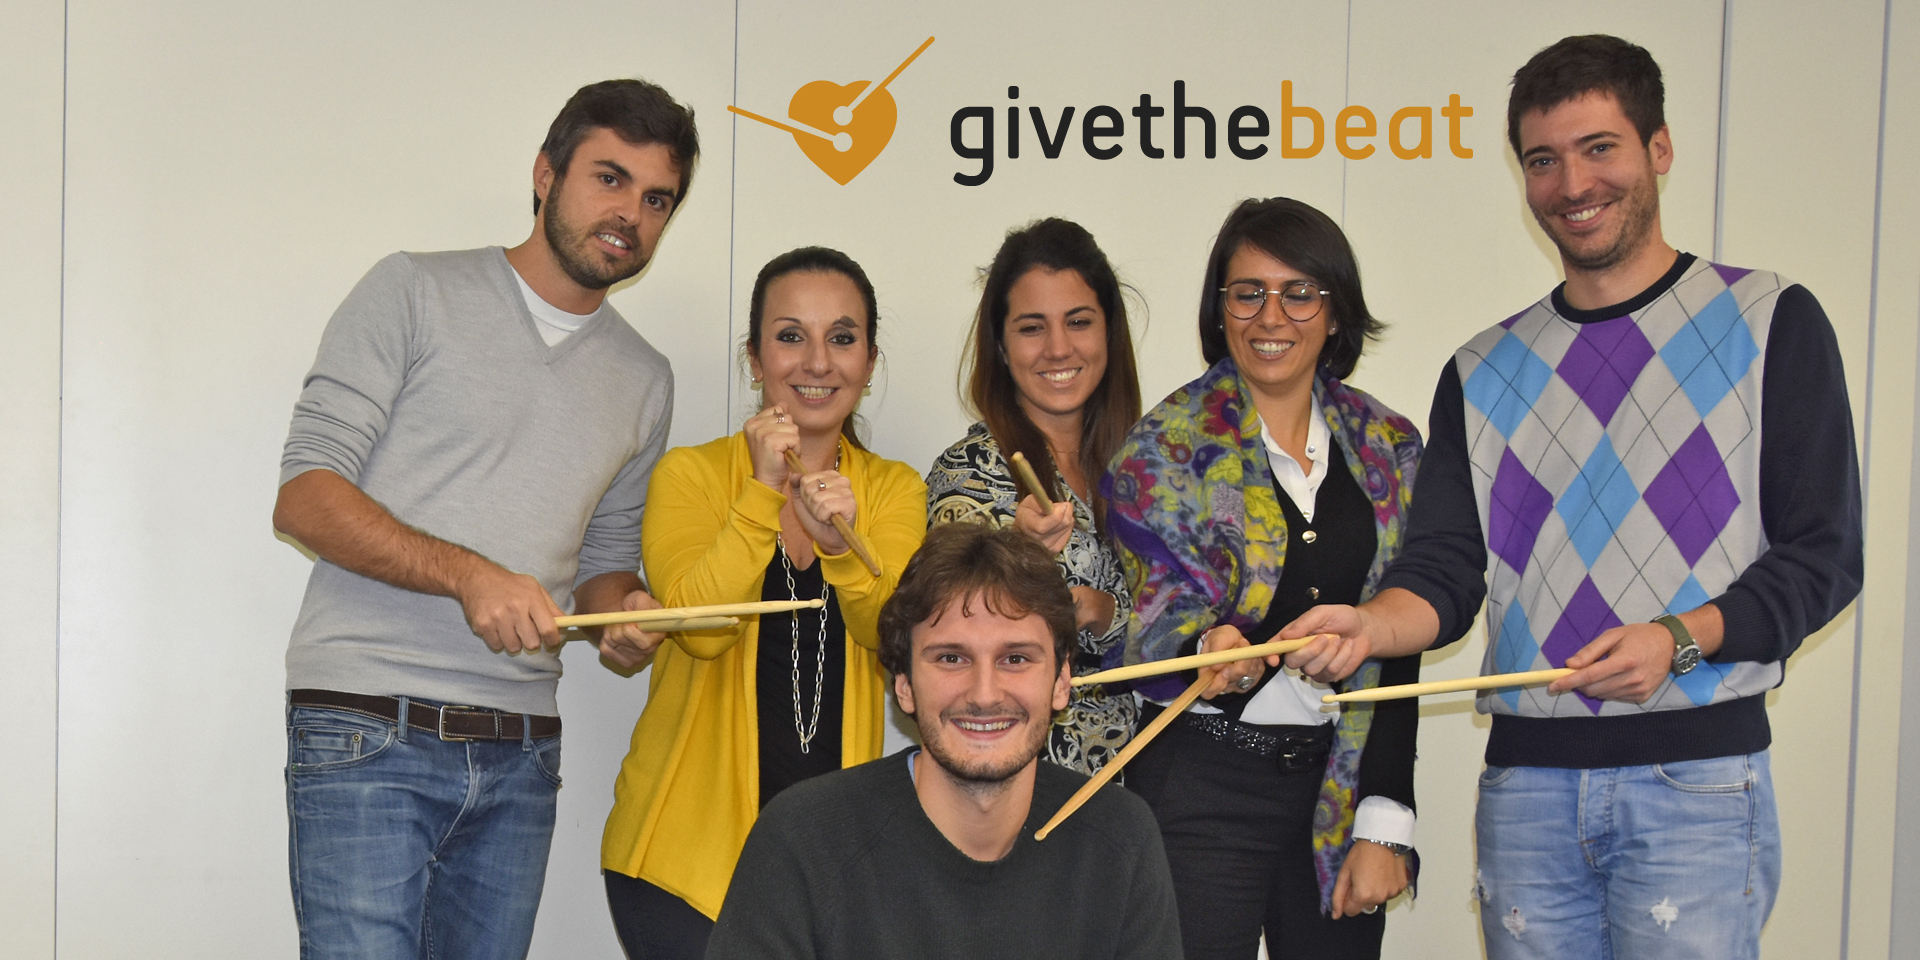 #GivetheBeat by Team Nielsen 3-Sara Zucchi